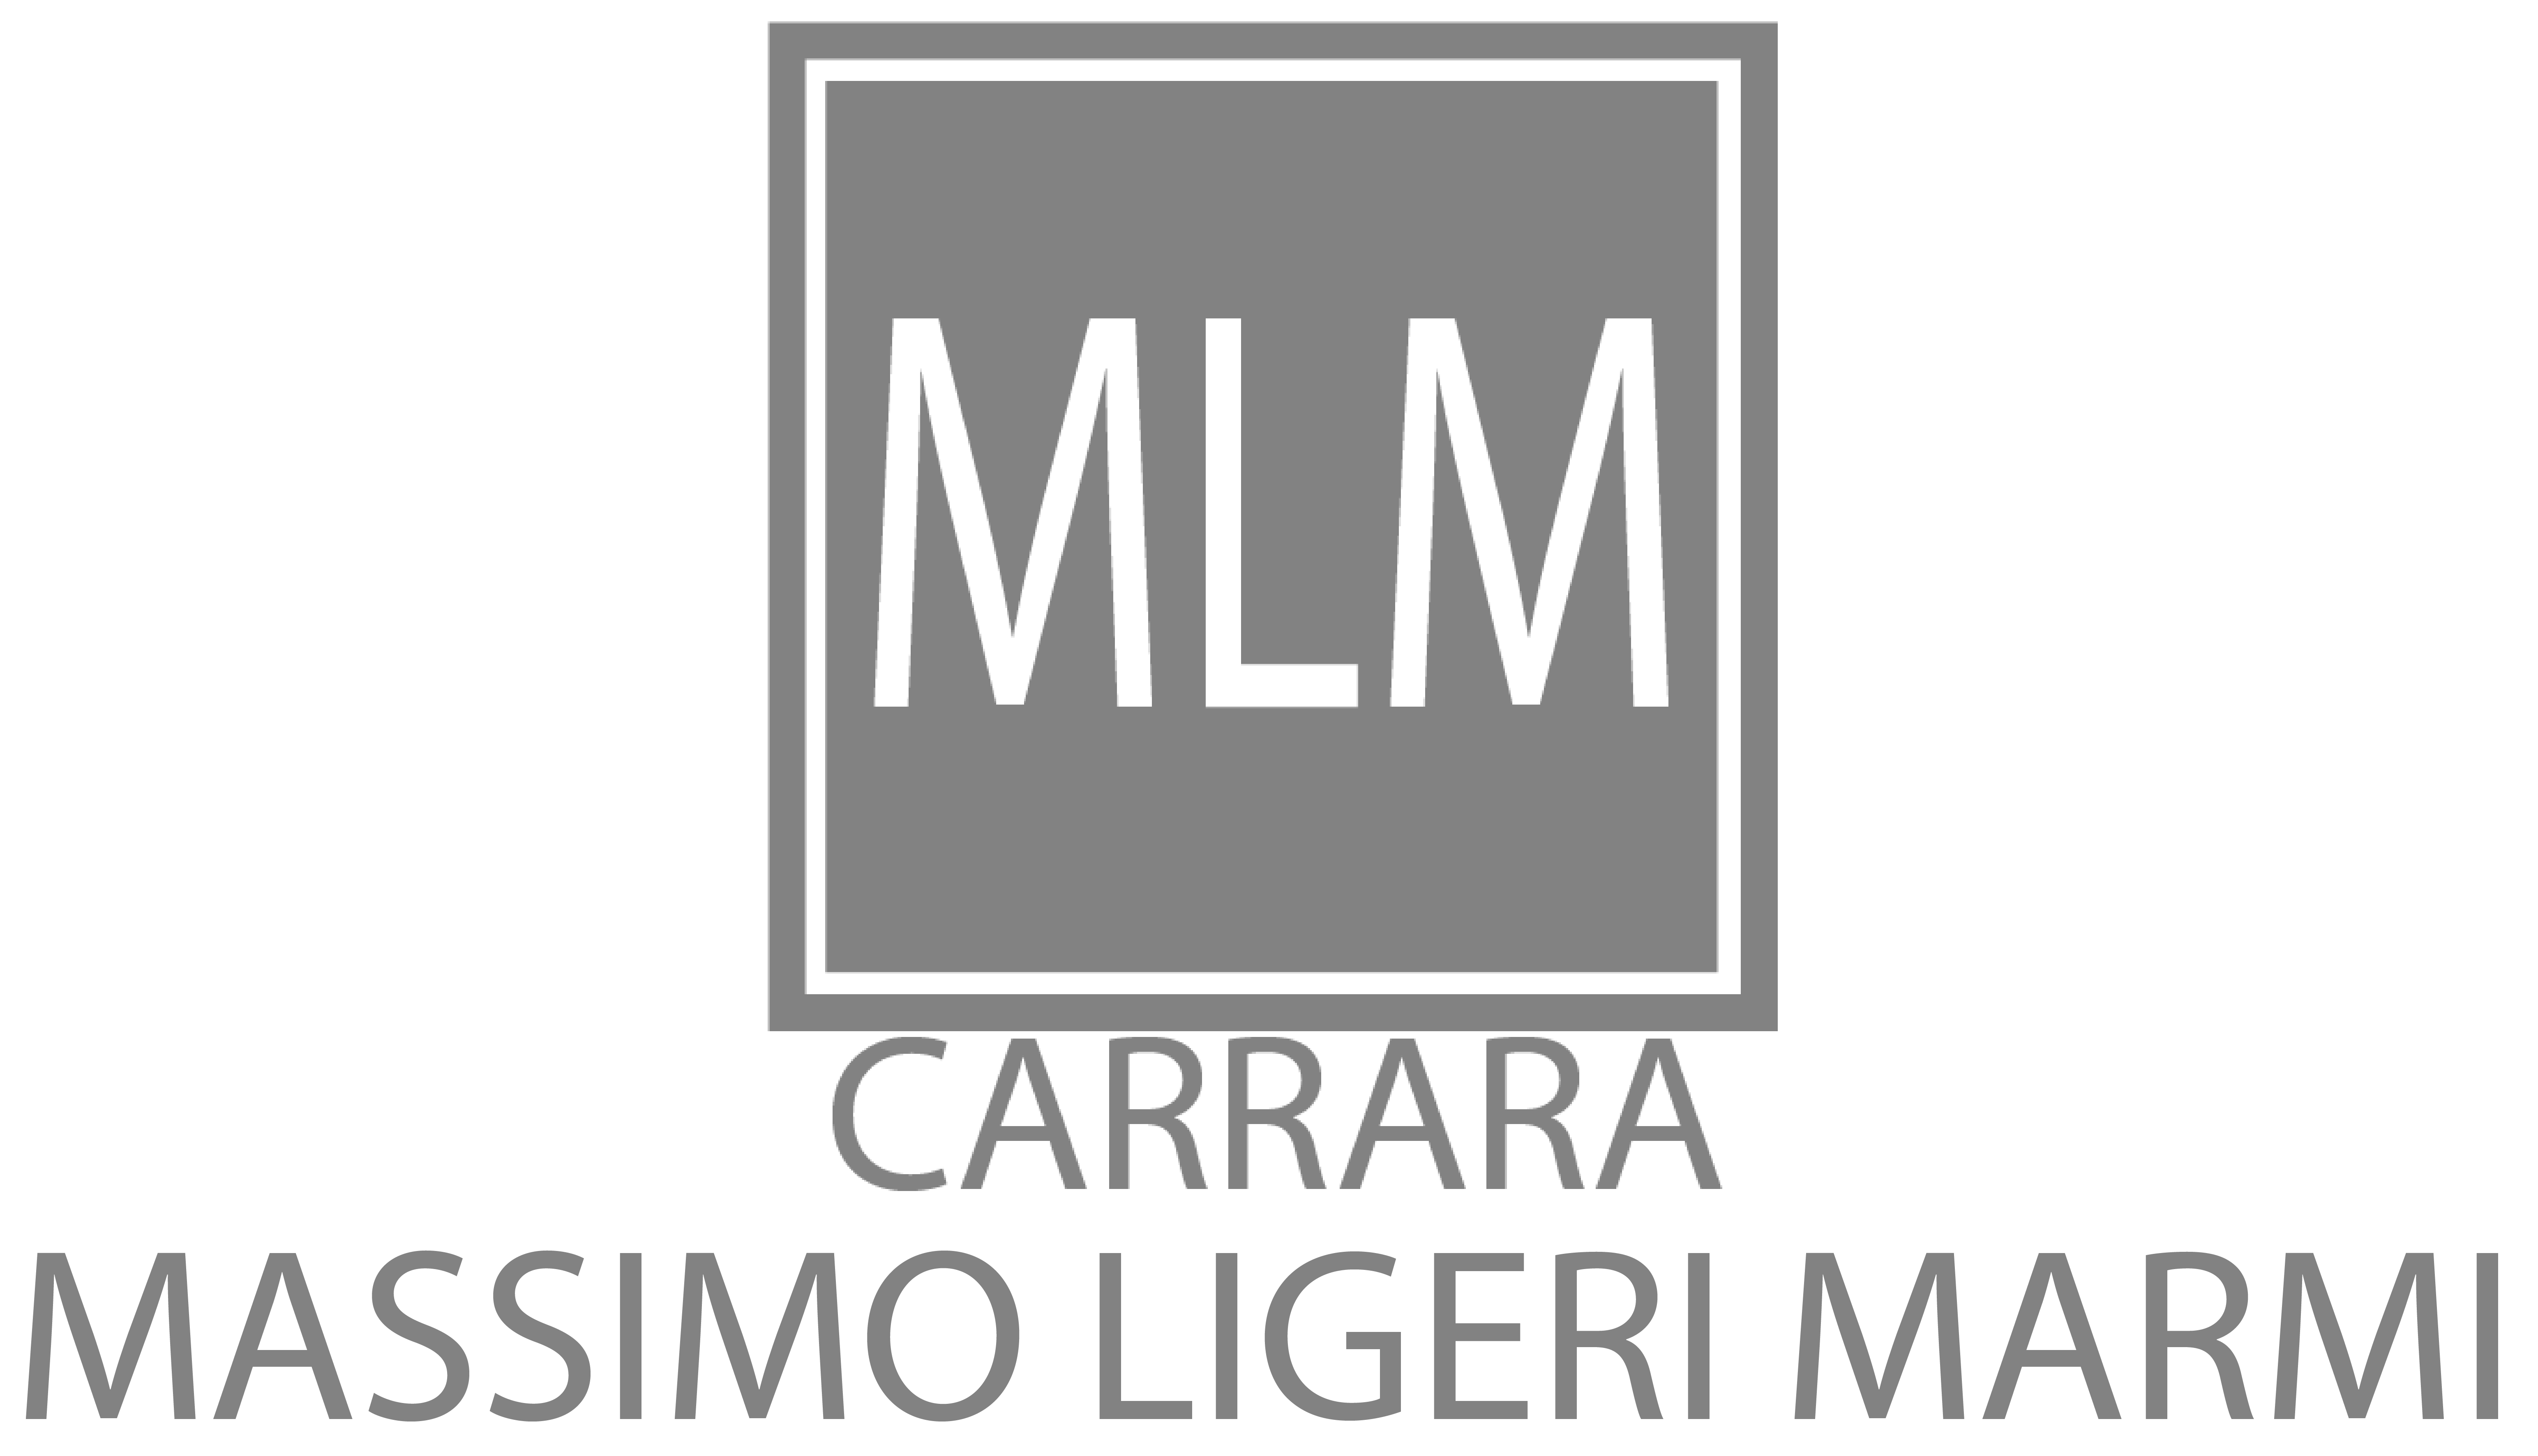 Massimo Ligeri Marmi